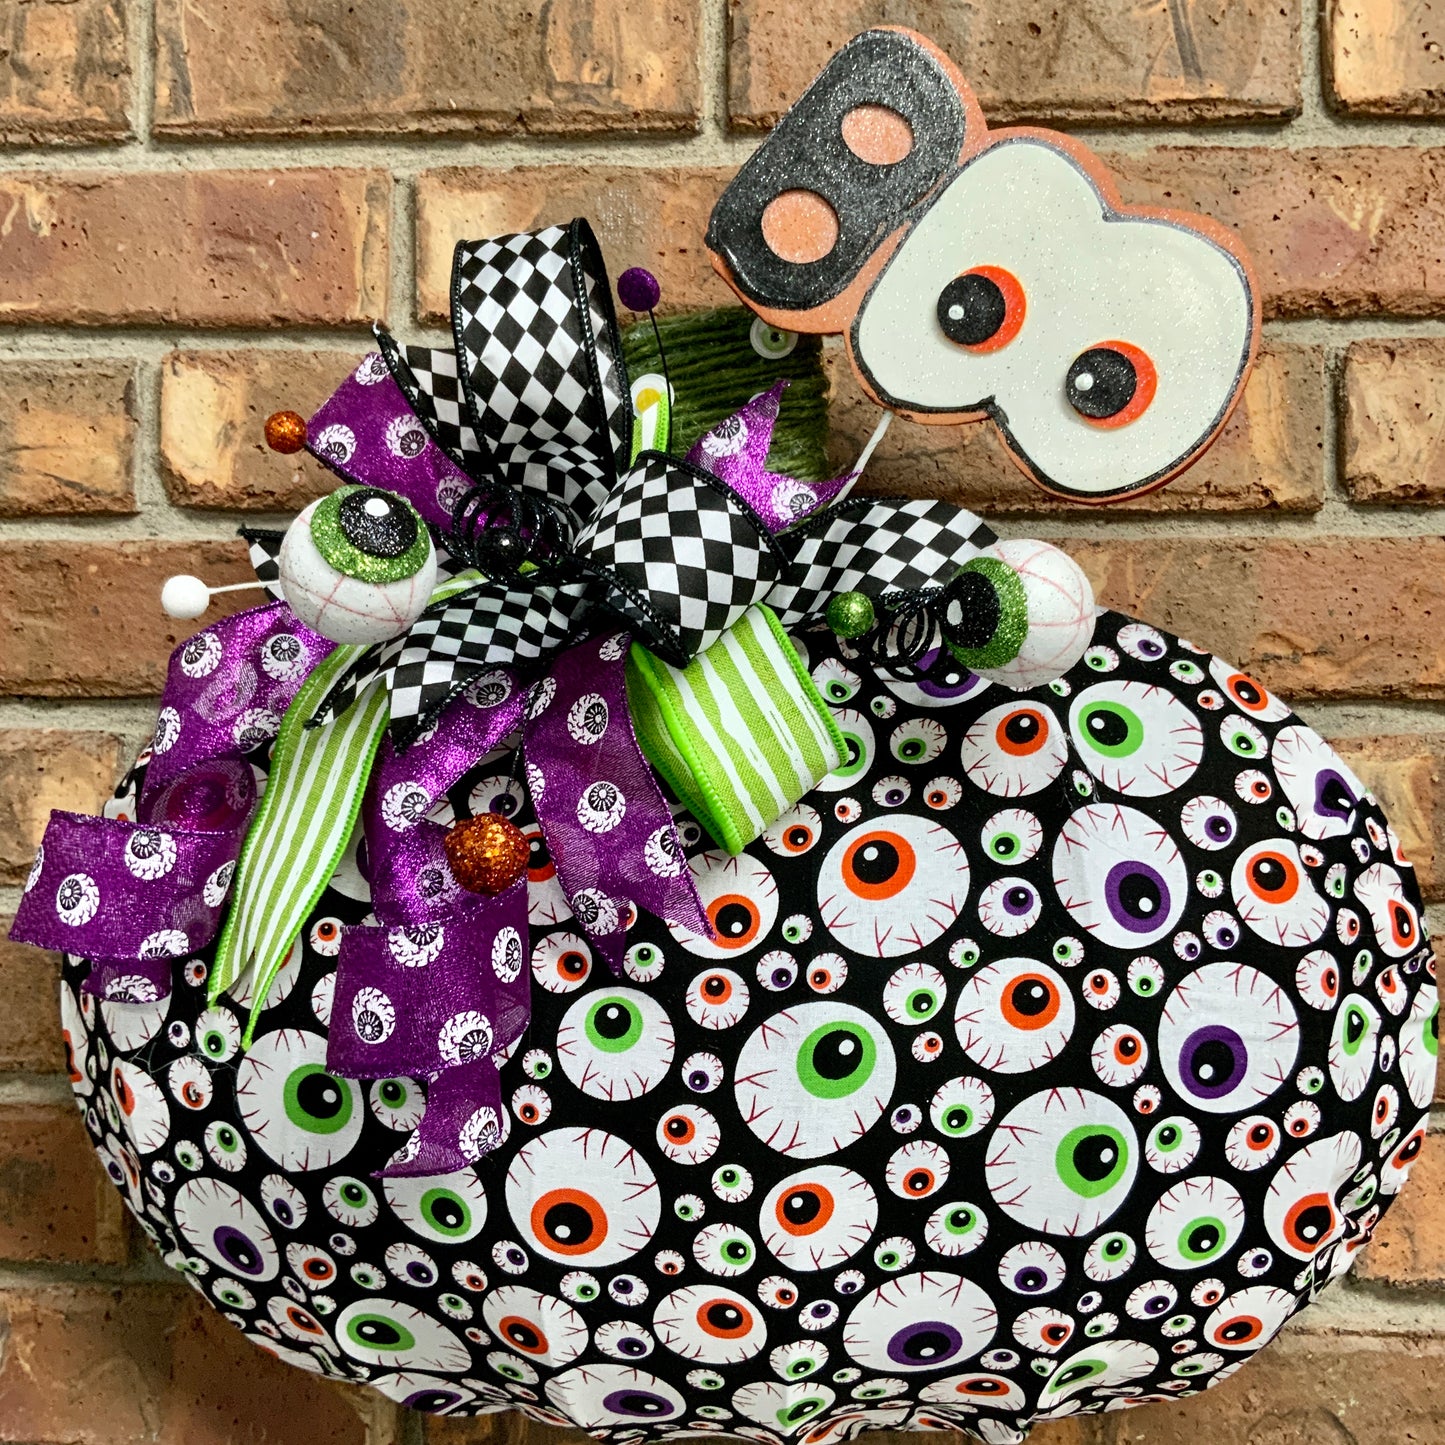 Eyeball Wreath, Boo Wreath, Halloween Wreath, Halloween Decor, Halloween Boo Wreath, Creepy Decor, Halloween Pumpkin Wreath